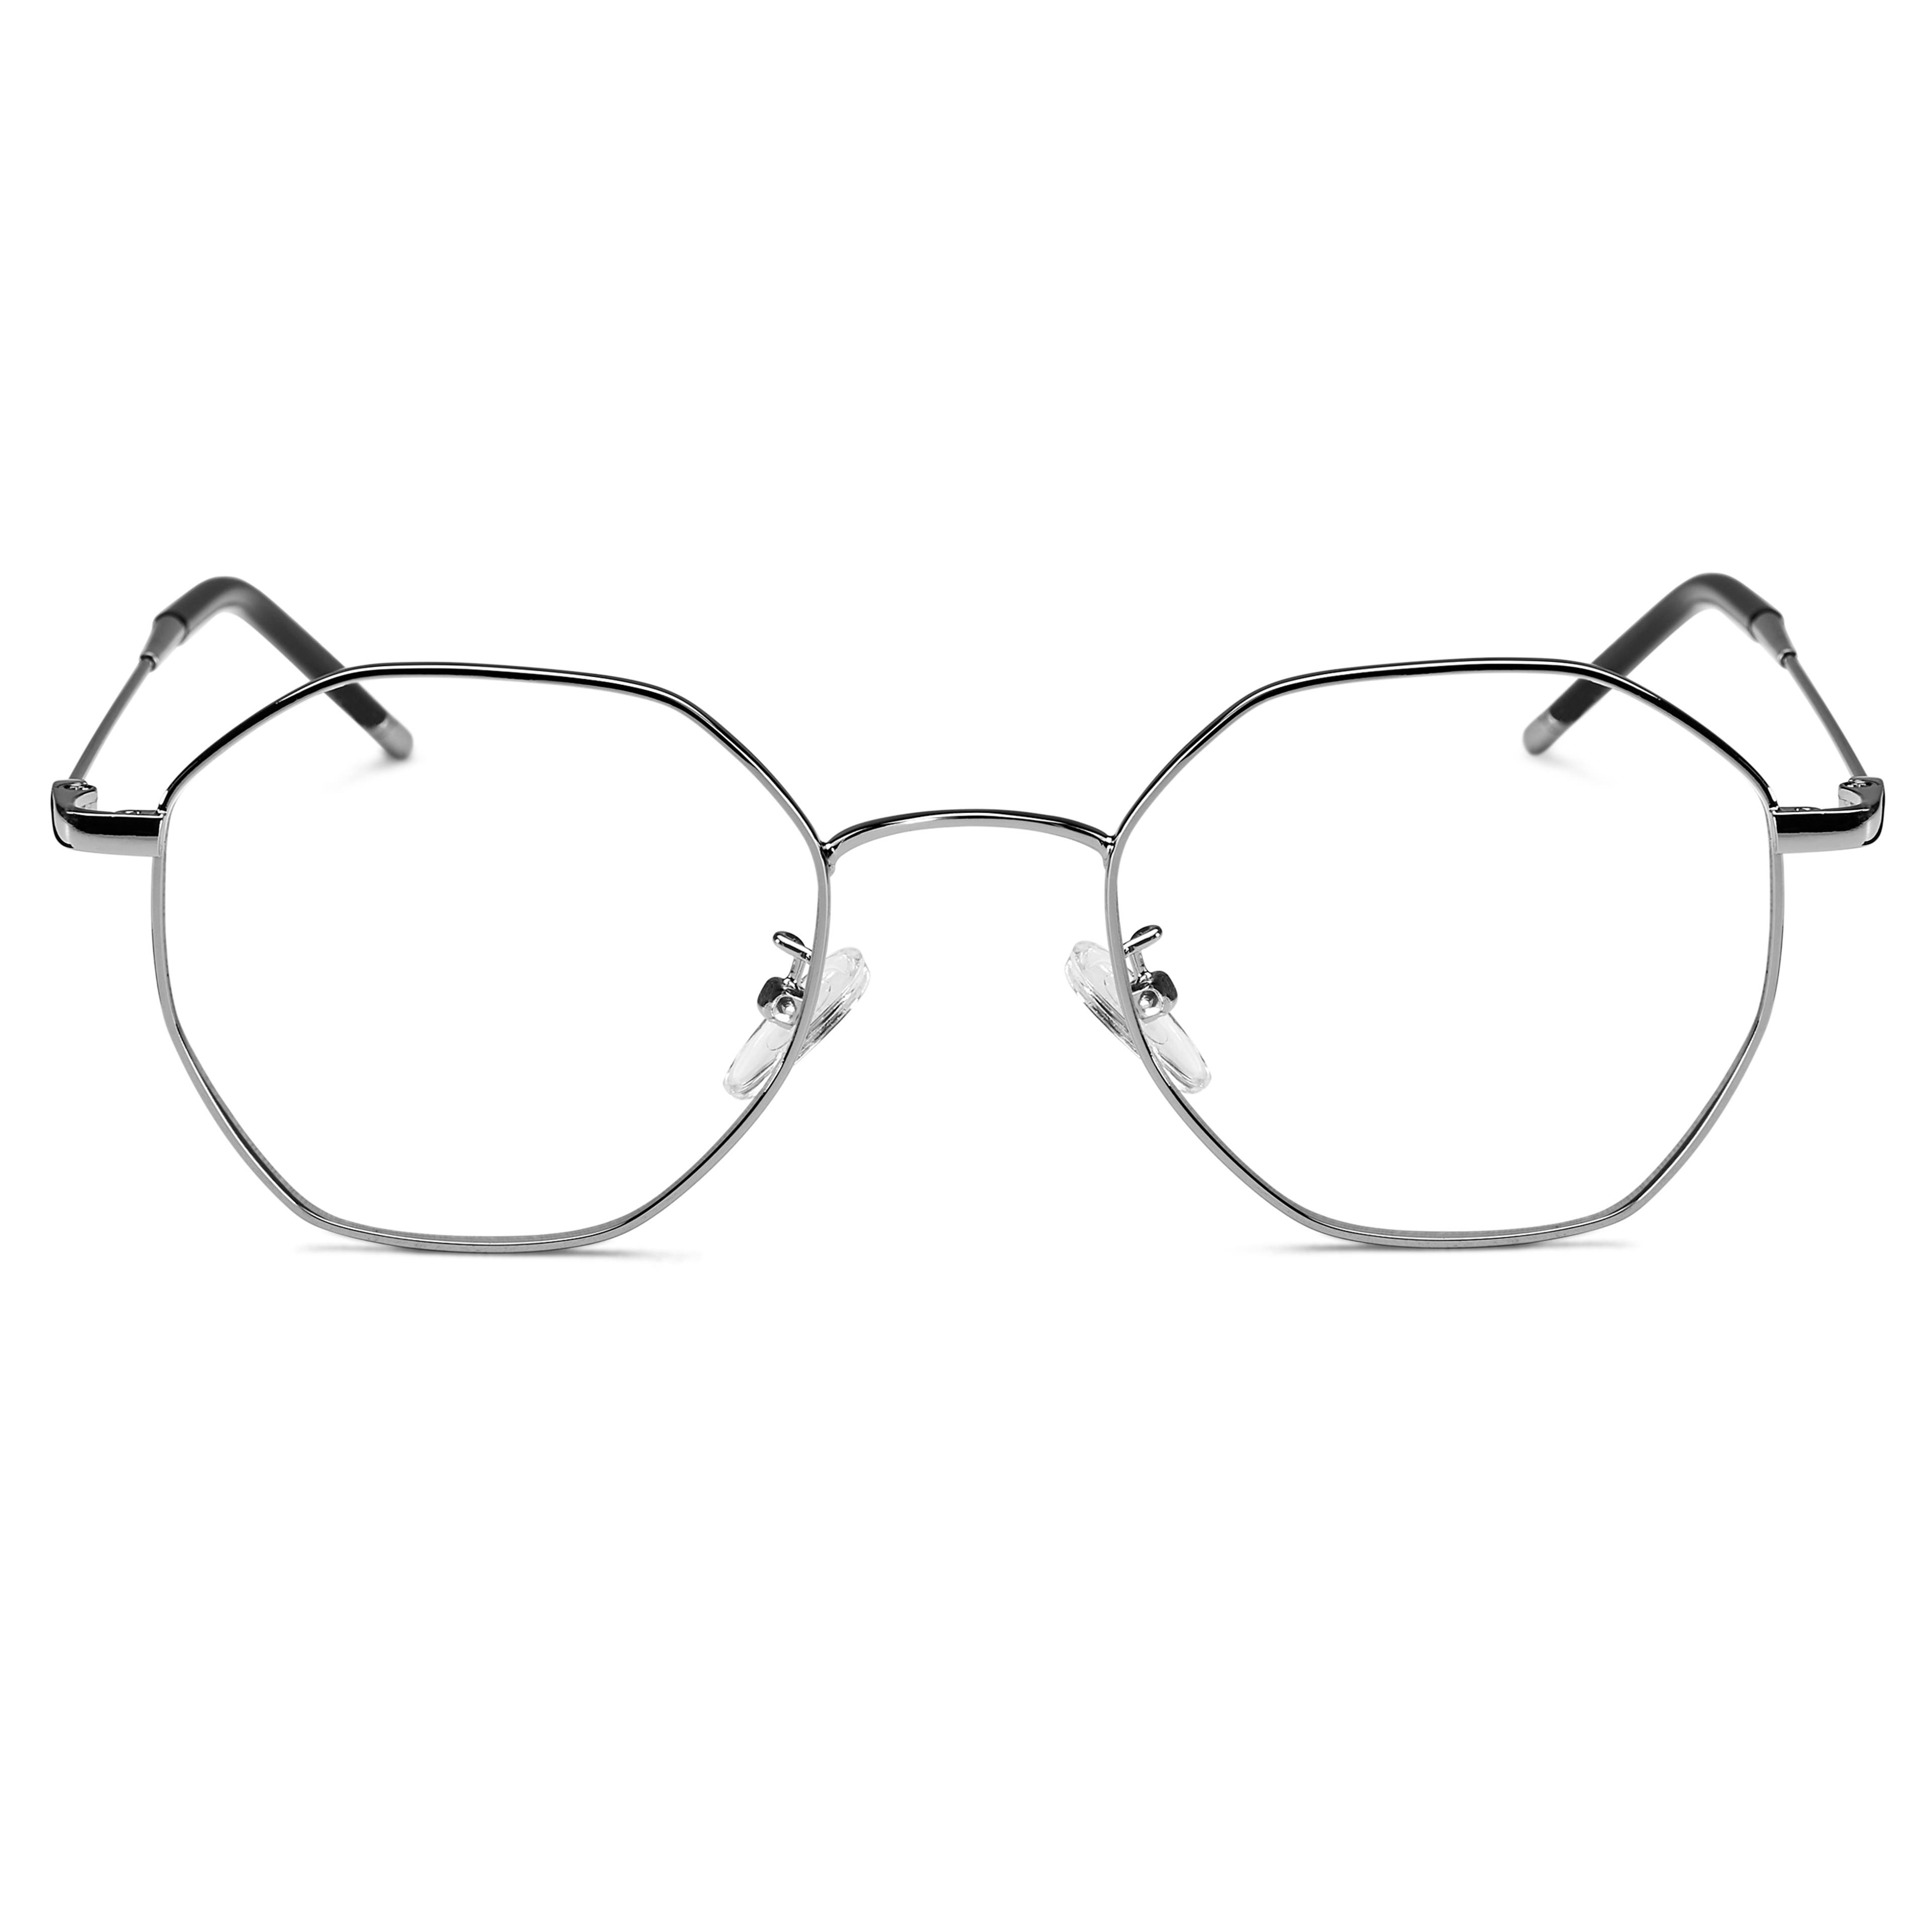 Executive brýle ve stříbrné barvě